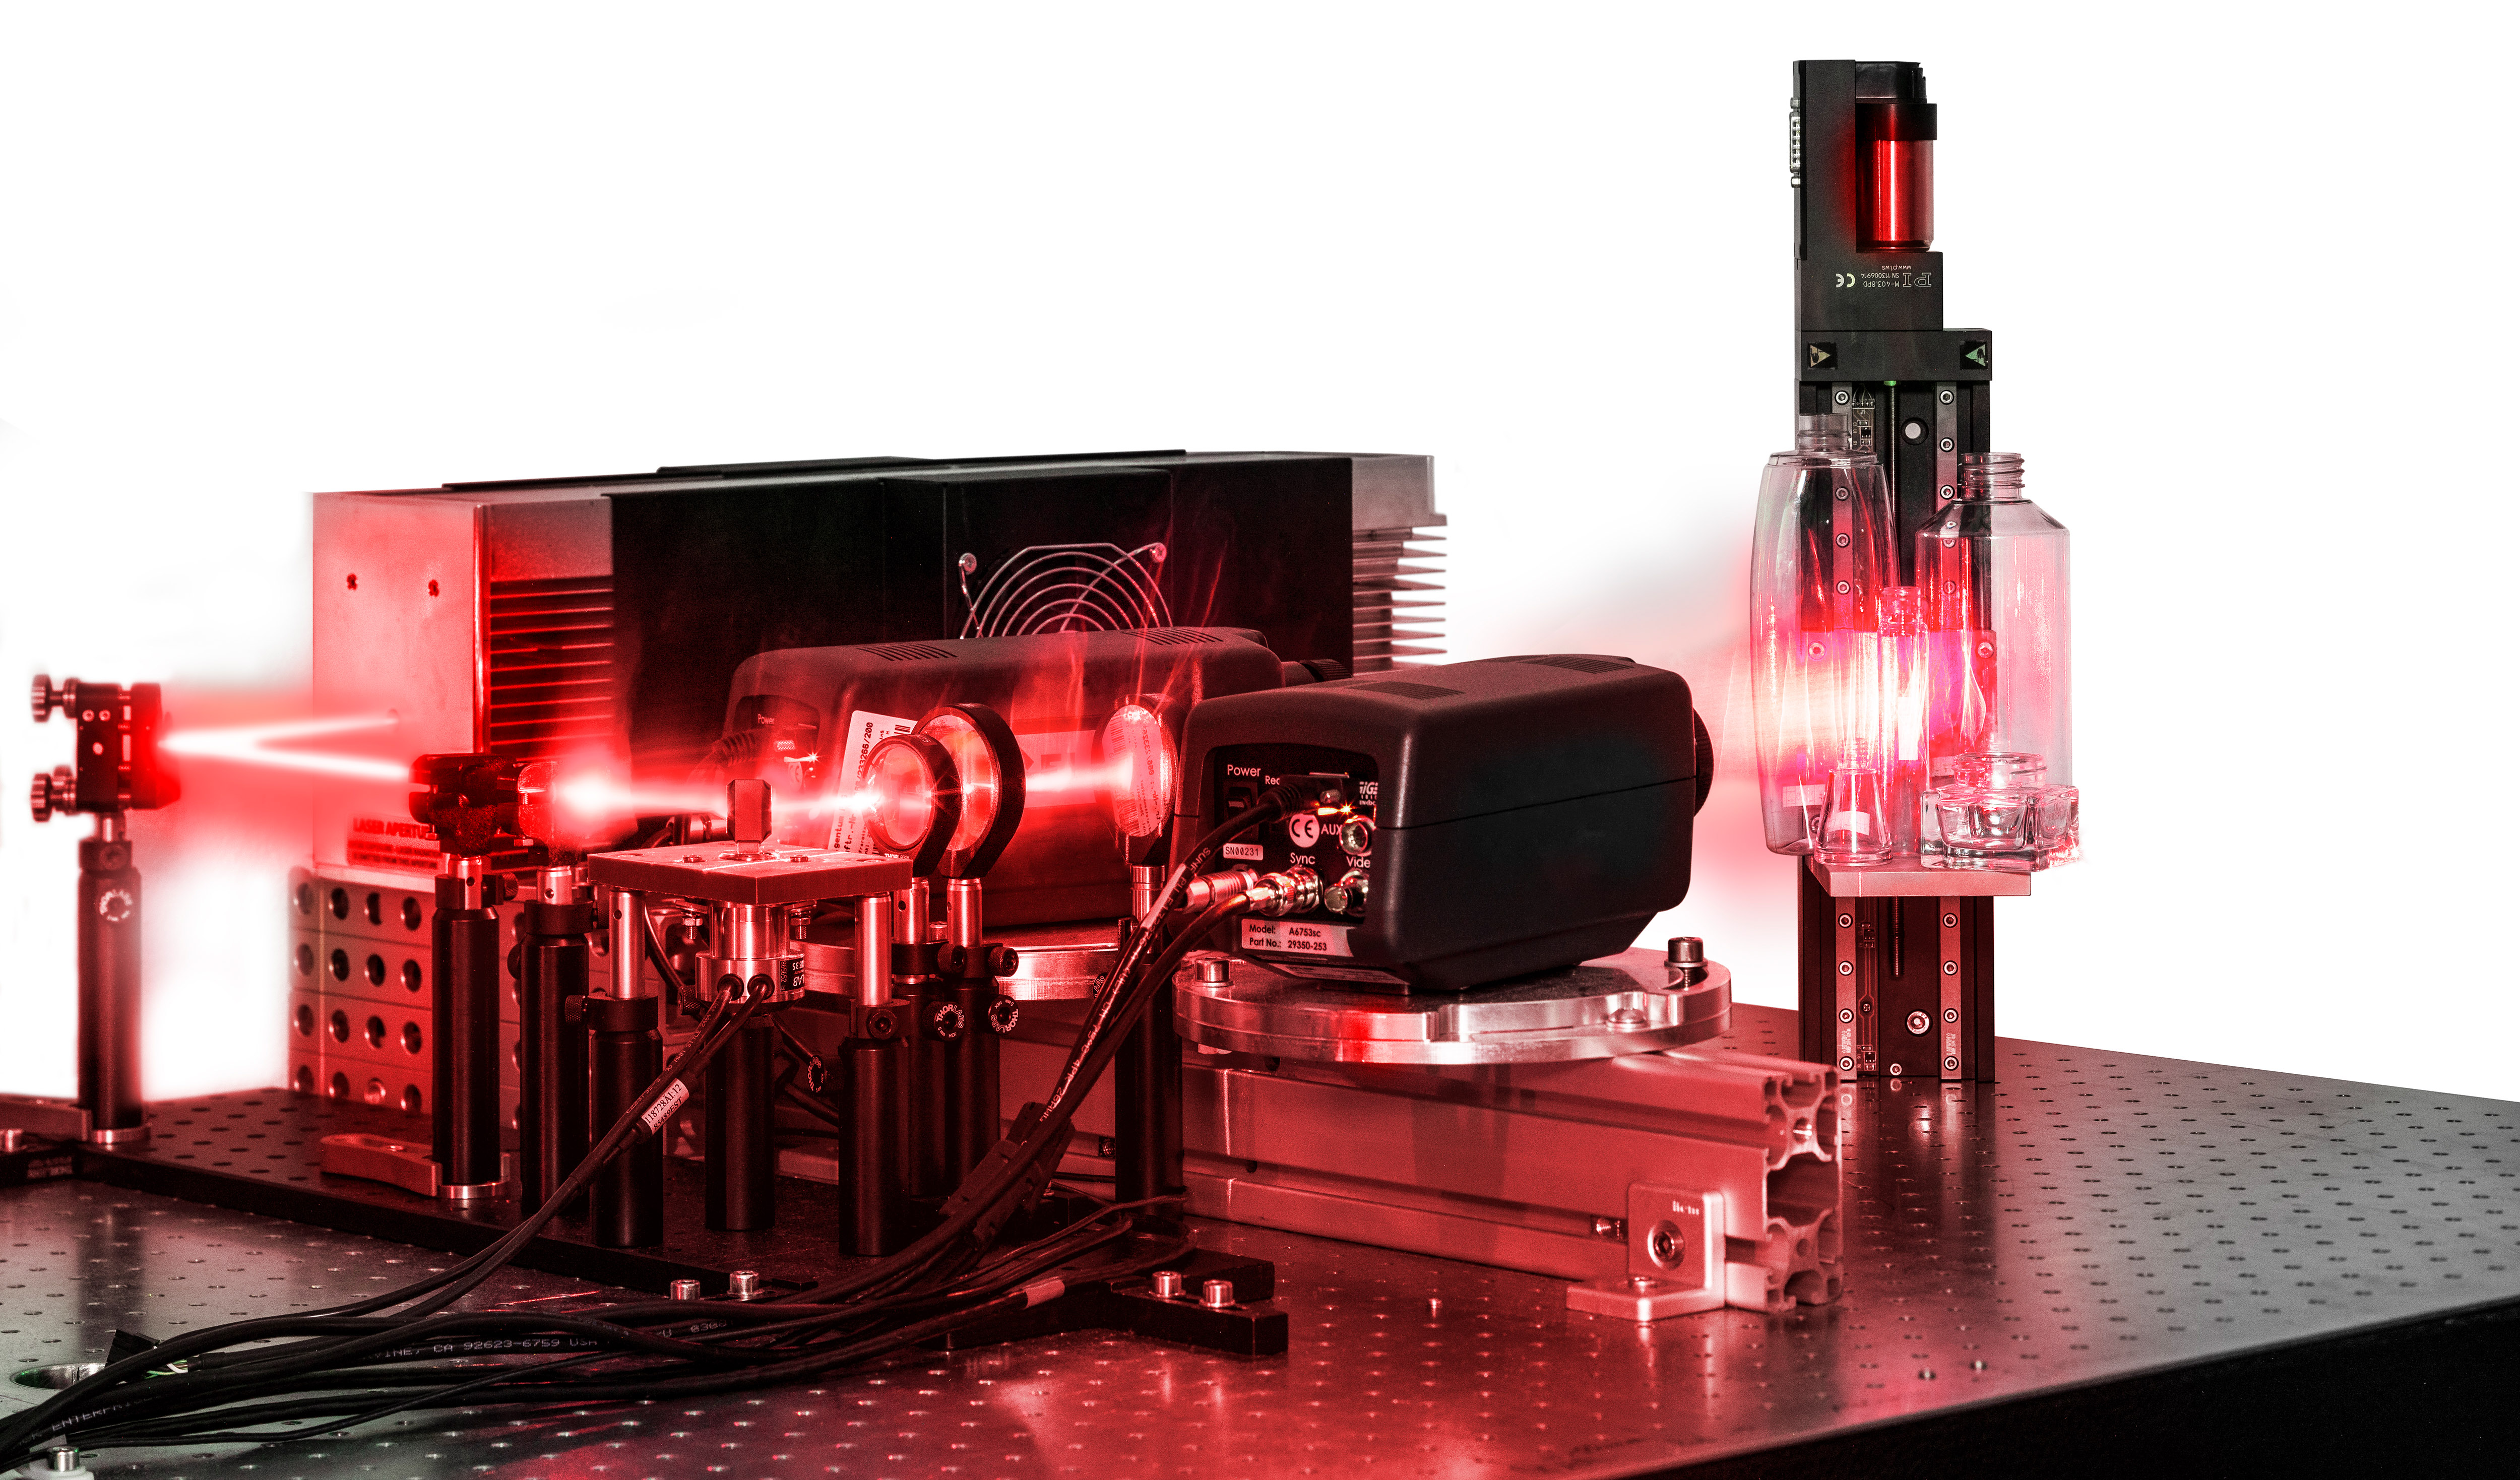 Laboraufbau zur Demonstration des MWIR-3D-Messprinzips: Ein Laser erzeugt mit Hilfe spezieller Optiken einen schmalen, energiereichen Streifen, der über das Messobjekt geführt wird. Zwei Wärmekameras zeichnen das emittierte Streifenmuster auf dem Messobjekt auf und liefern damit die Basis für die Errechnung der 3d-Punktwolke.